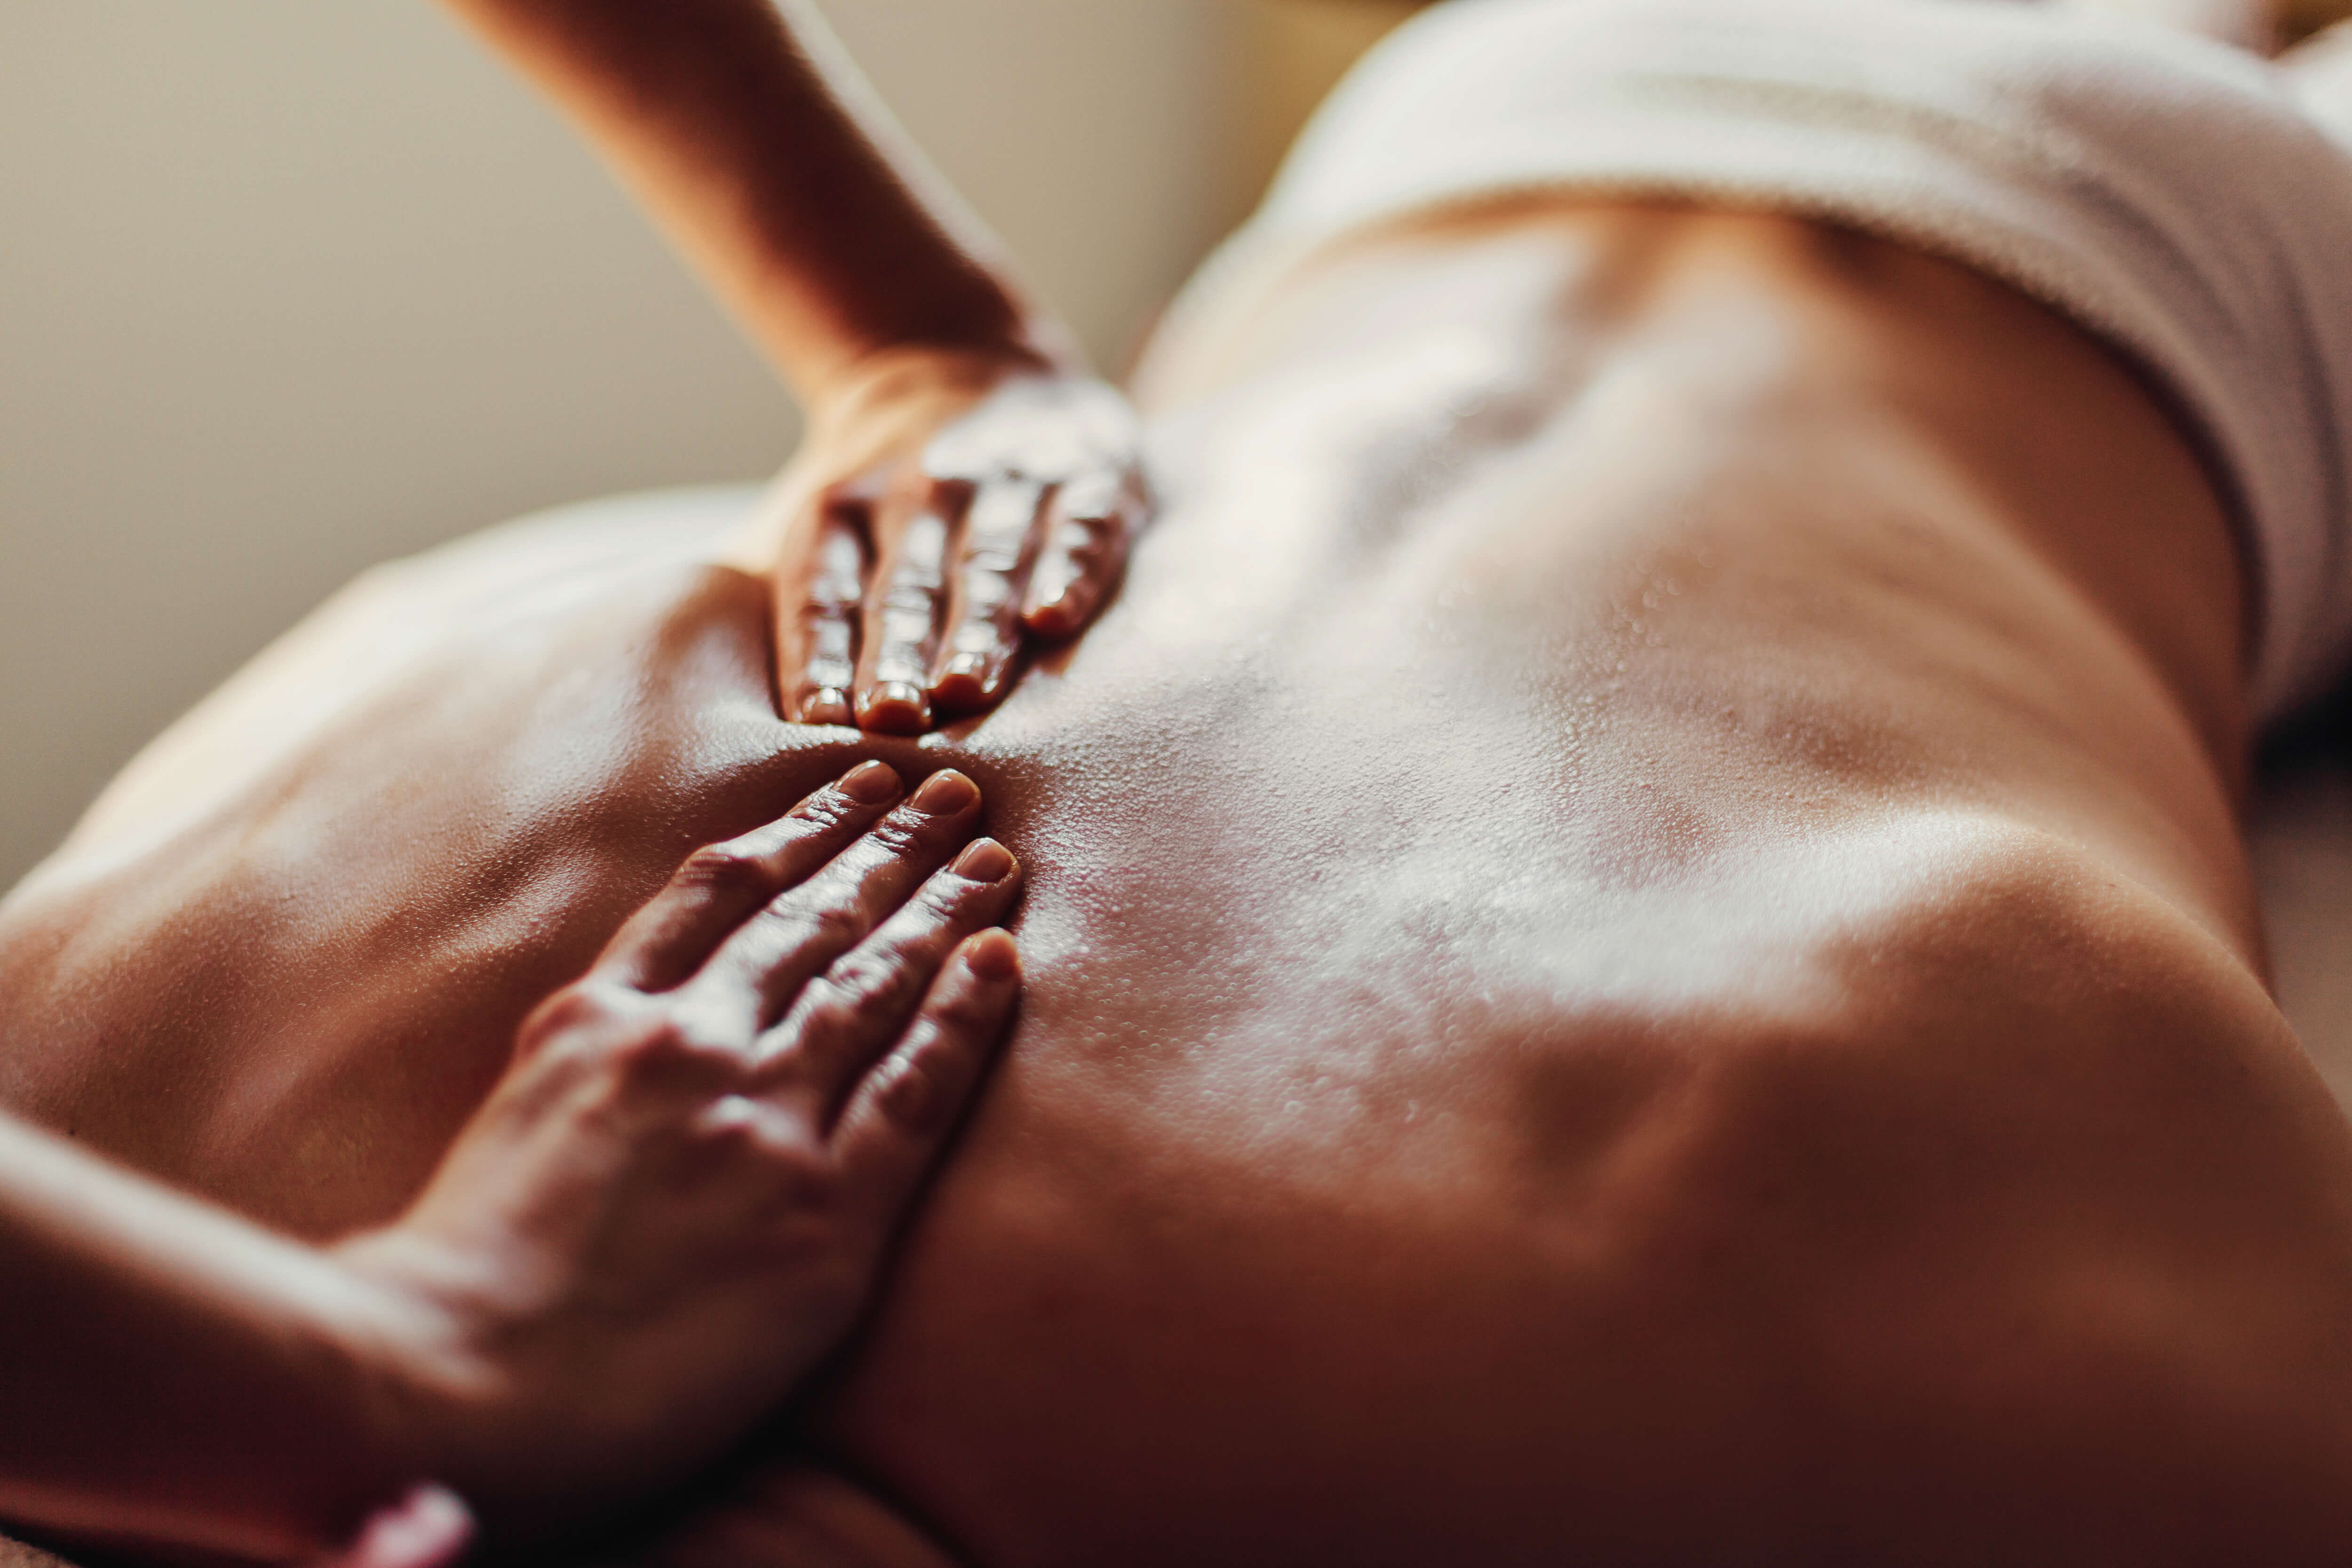 A back massage